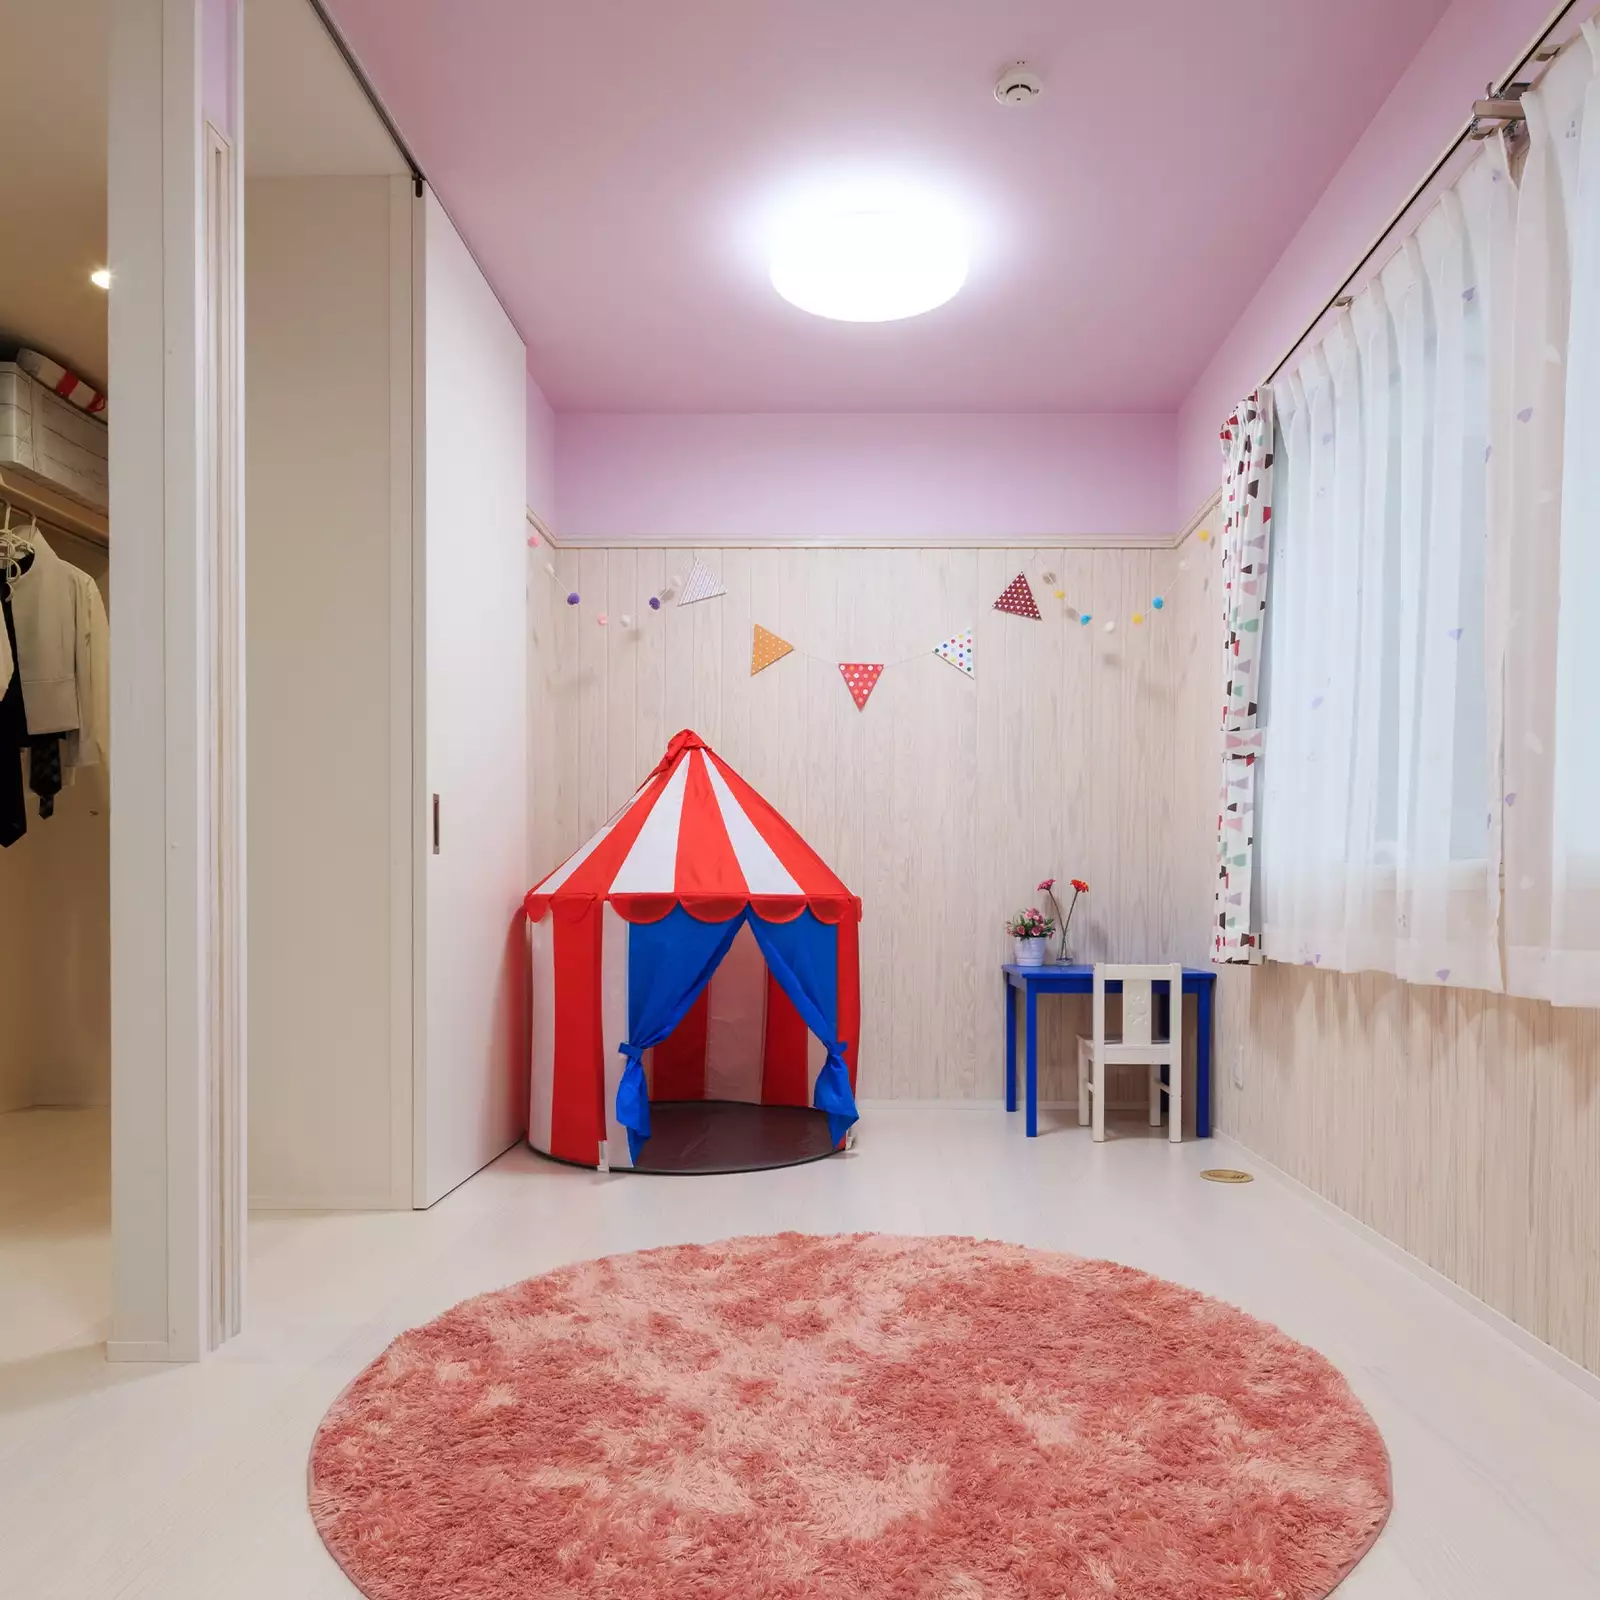 R+houseの物件の子ども部屋の写真です。白い床、白い木の腰板。天井と壁の上の方はピンクの壁紙でかわいい。右側に窓、左側にはドア。ドアの向こうにファミリークローゼット。